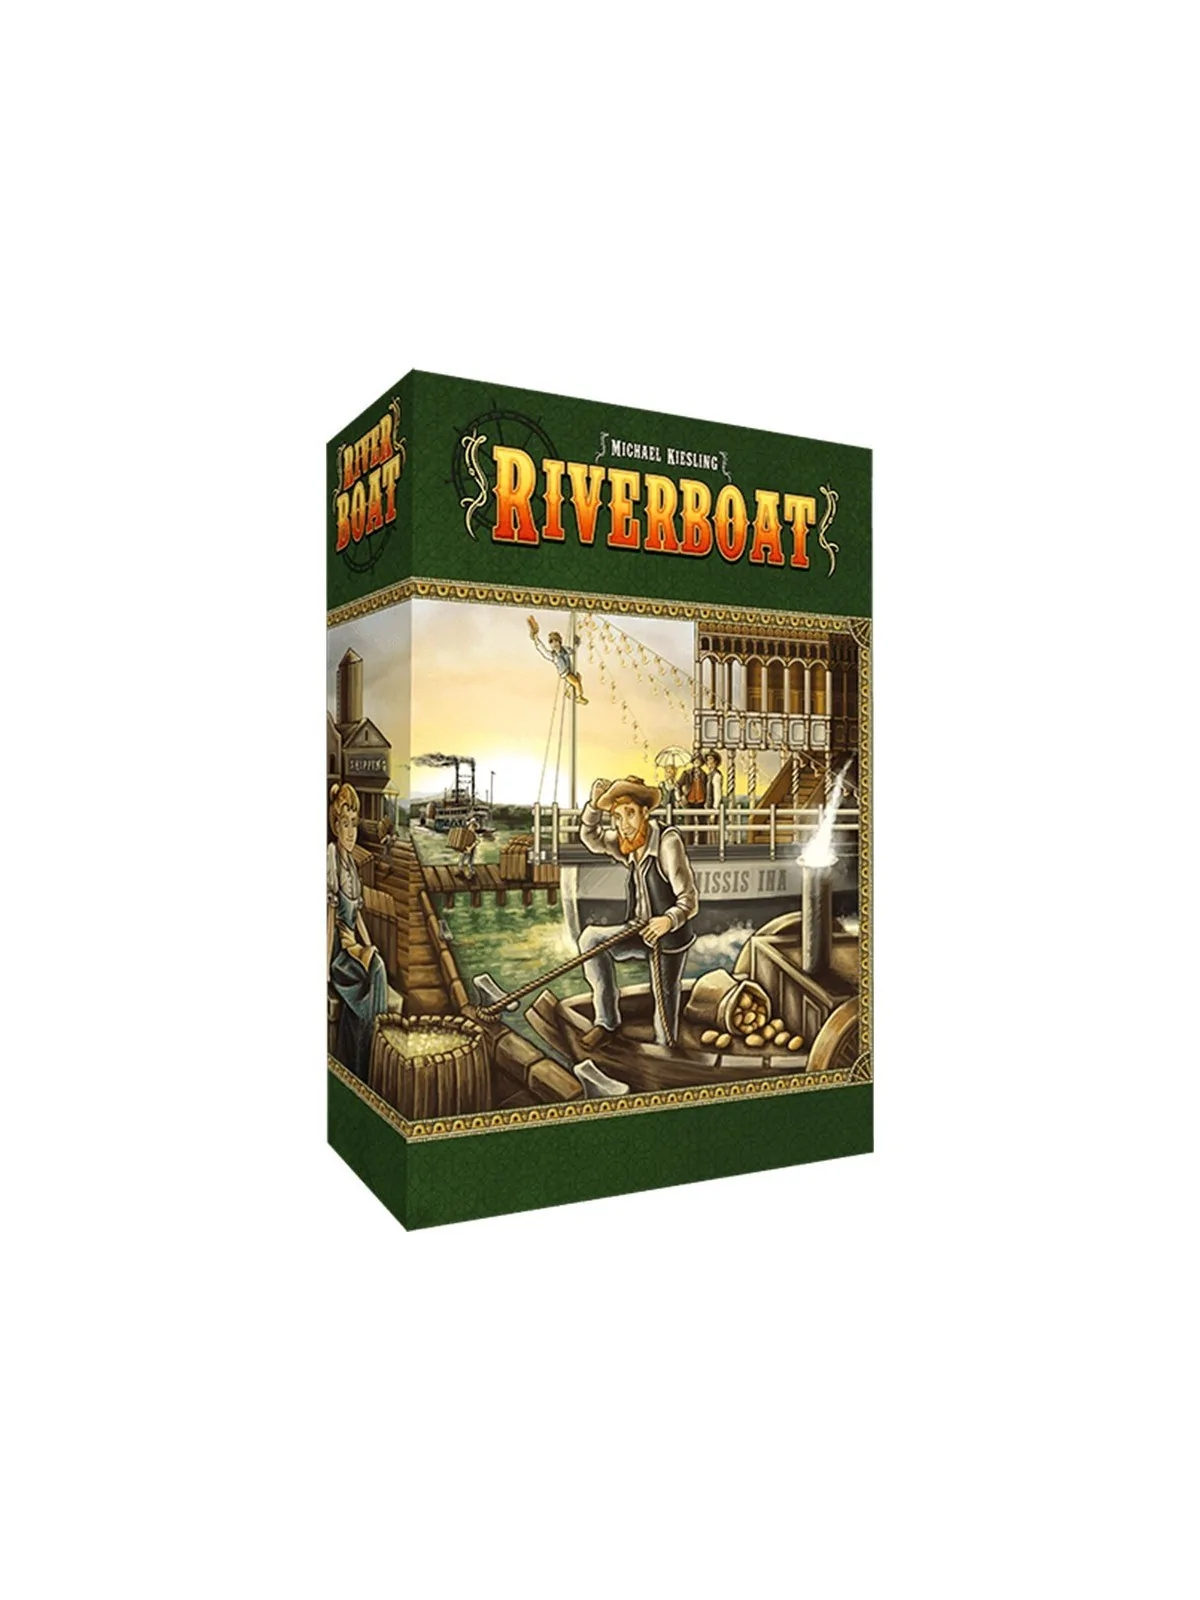 Comprar Riverboat barato al mejor precio 31,45 € de SD GAMES